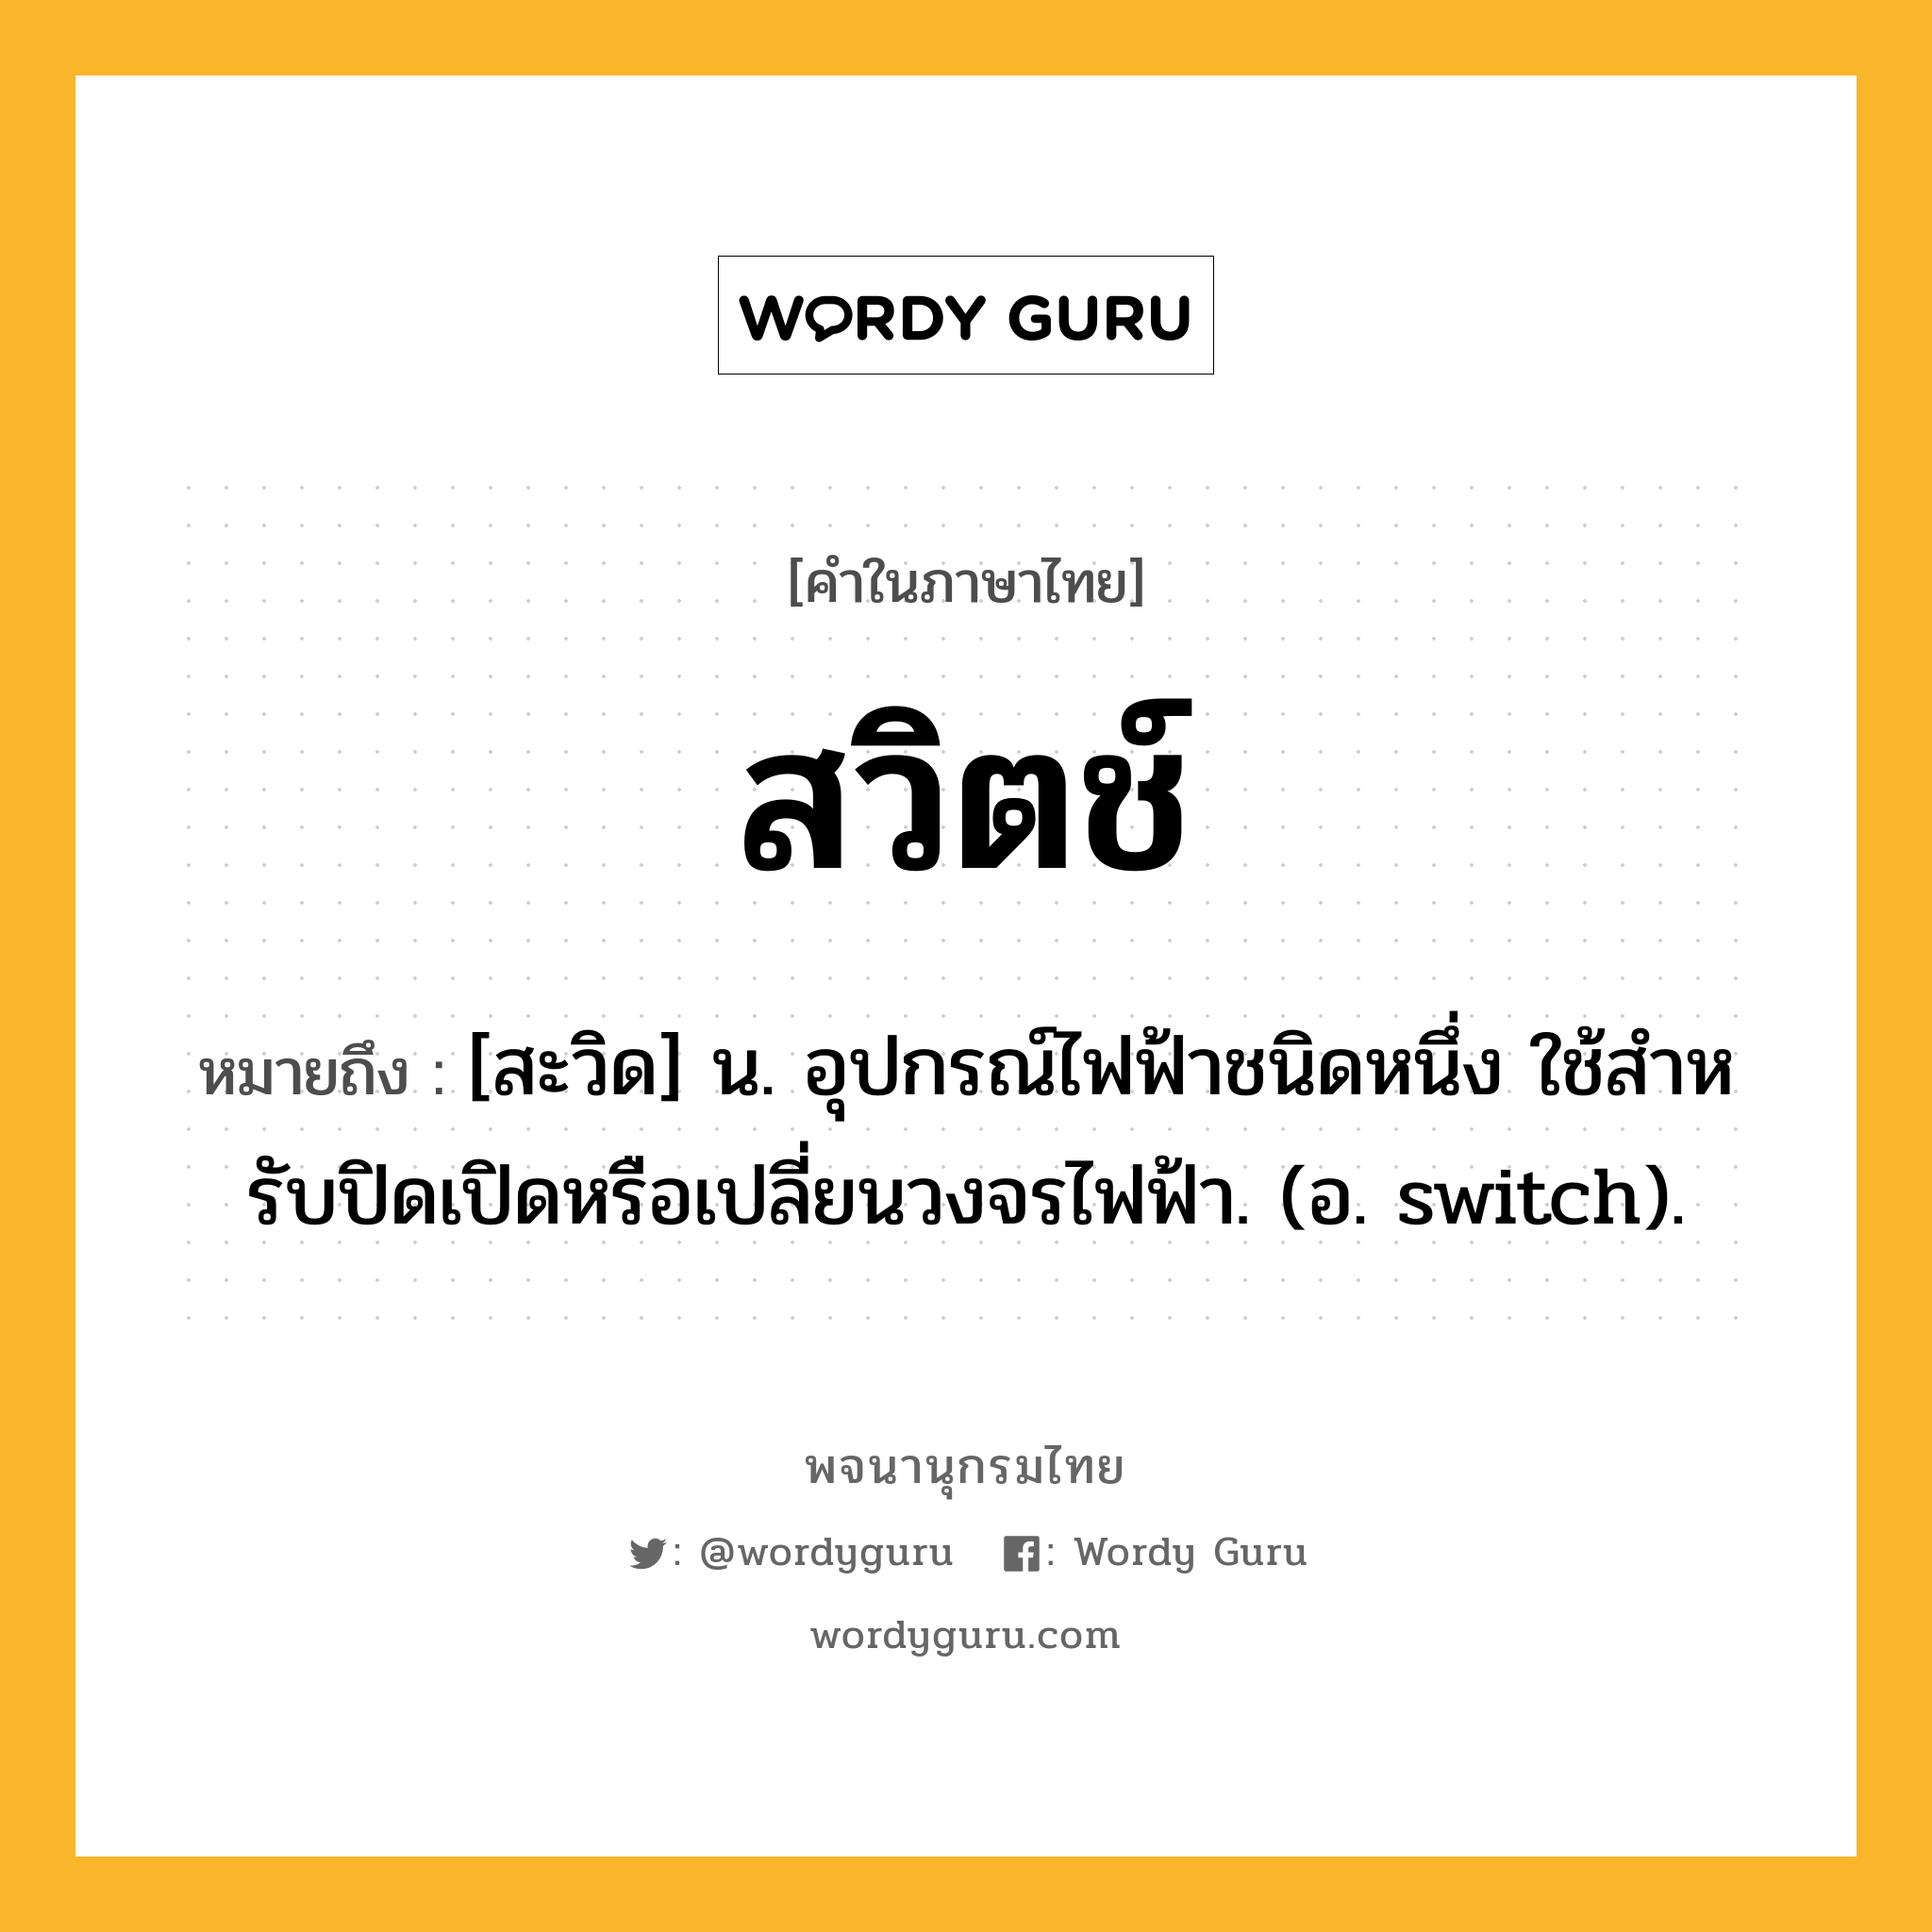 สวิตช์ หมายถึงอะไร?, คำในภาษาไทย สวิตช์ หมายถึง [สะวิด] น. อุปกรณ์ไฟฟ้าชนิดหนึ่ง ใช้สําหรับปิดเปิดหรือเปลี่ยนวงจรไฟฟ้า. (อ. switch).